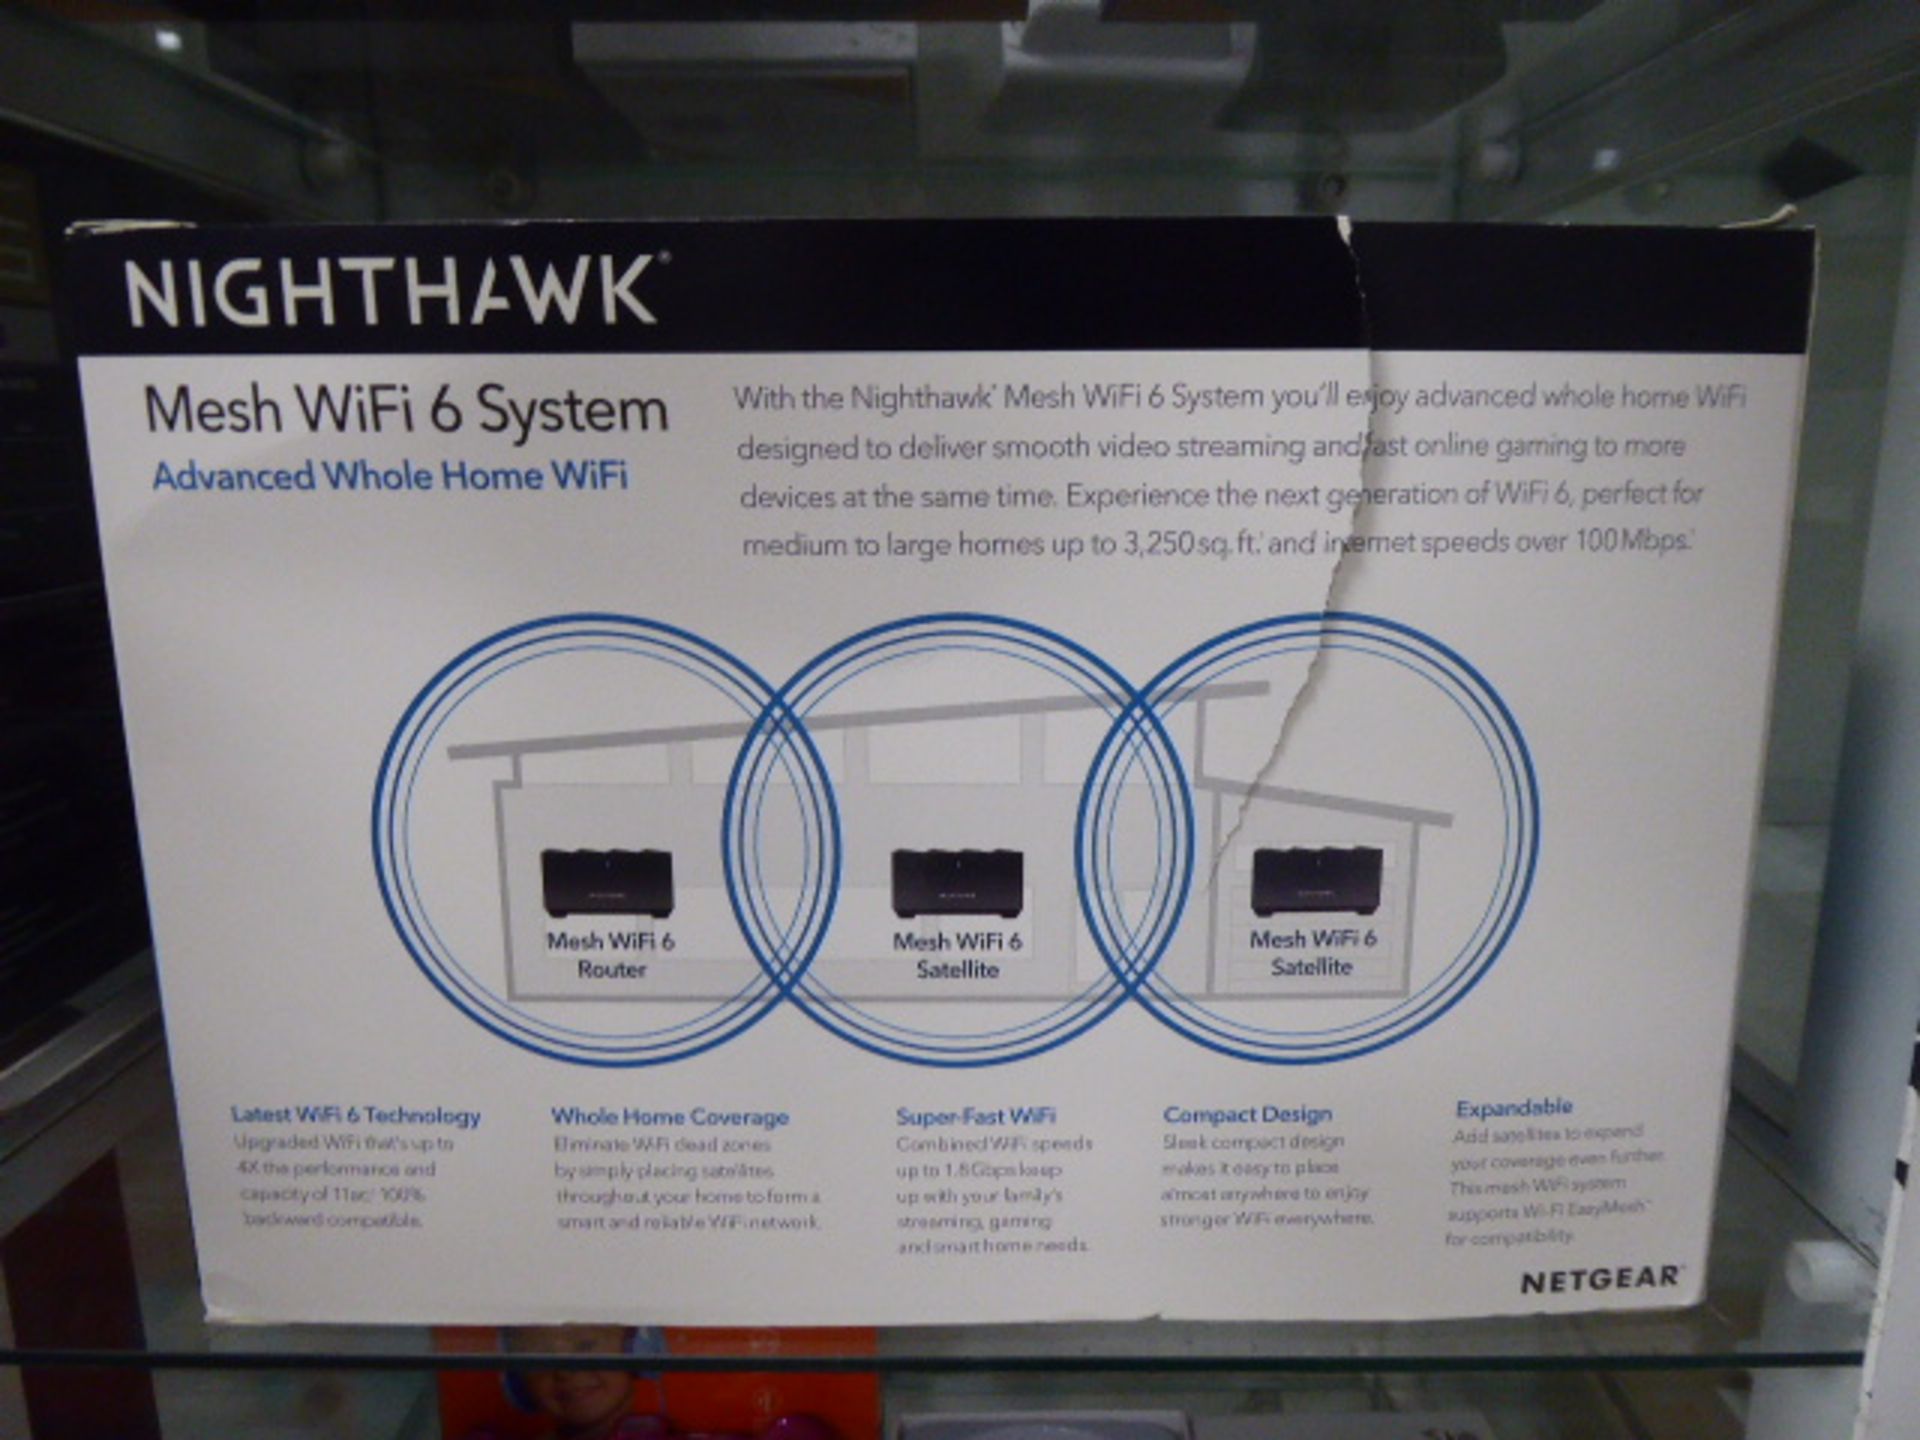 Net Gear Nighthawk mesh wifi 6 system in box - Image 2 of 2